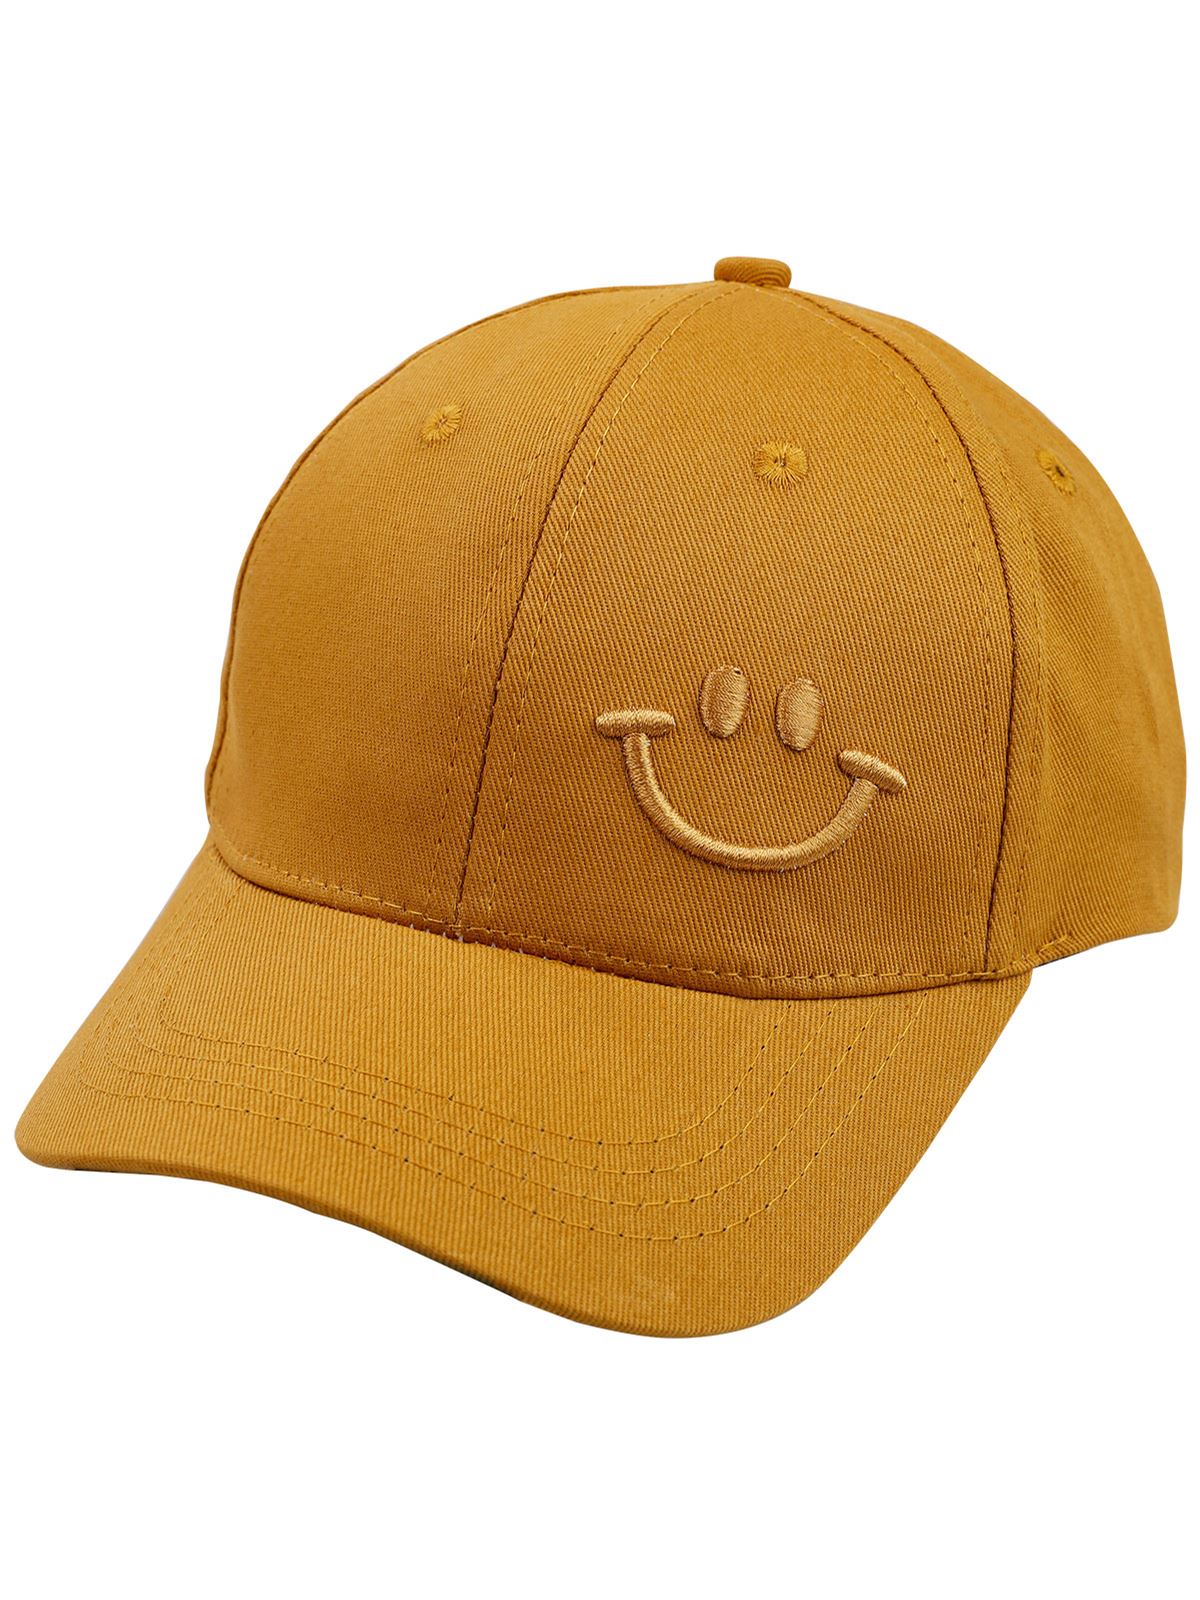 Civil Boys Erkek Çocuk Kep Şapka 6-9 Yaş Hardal